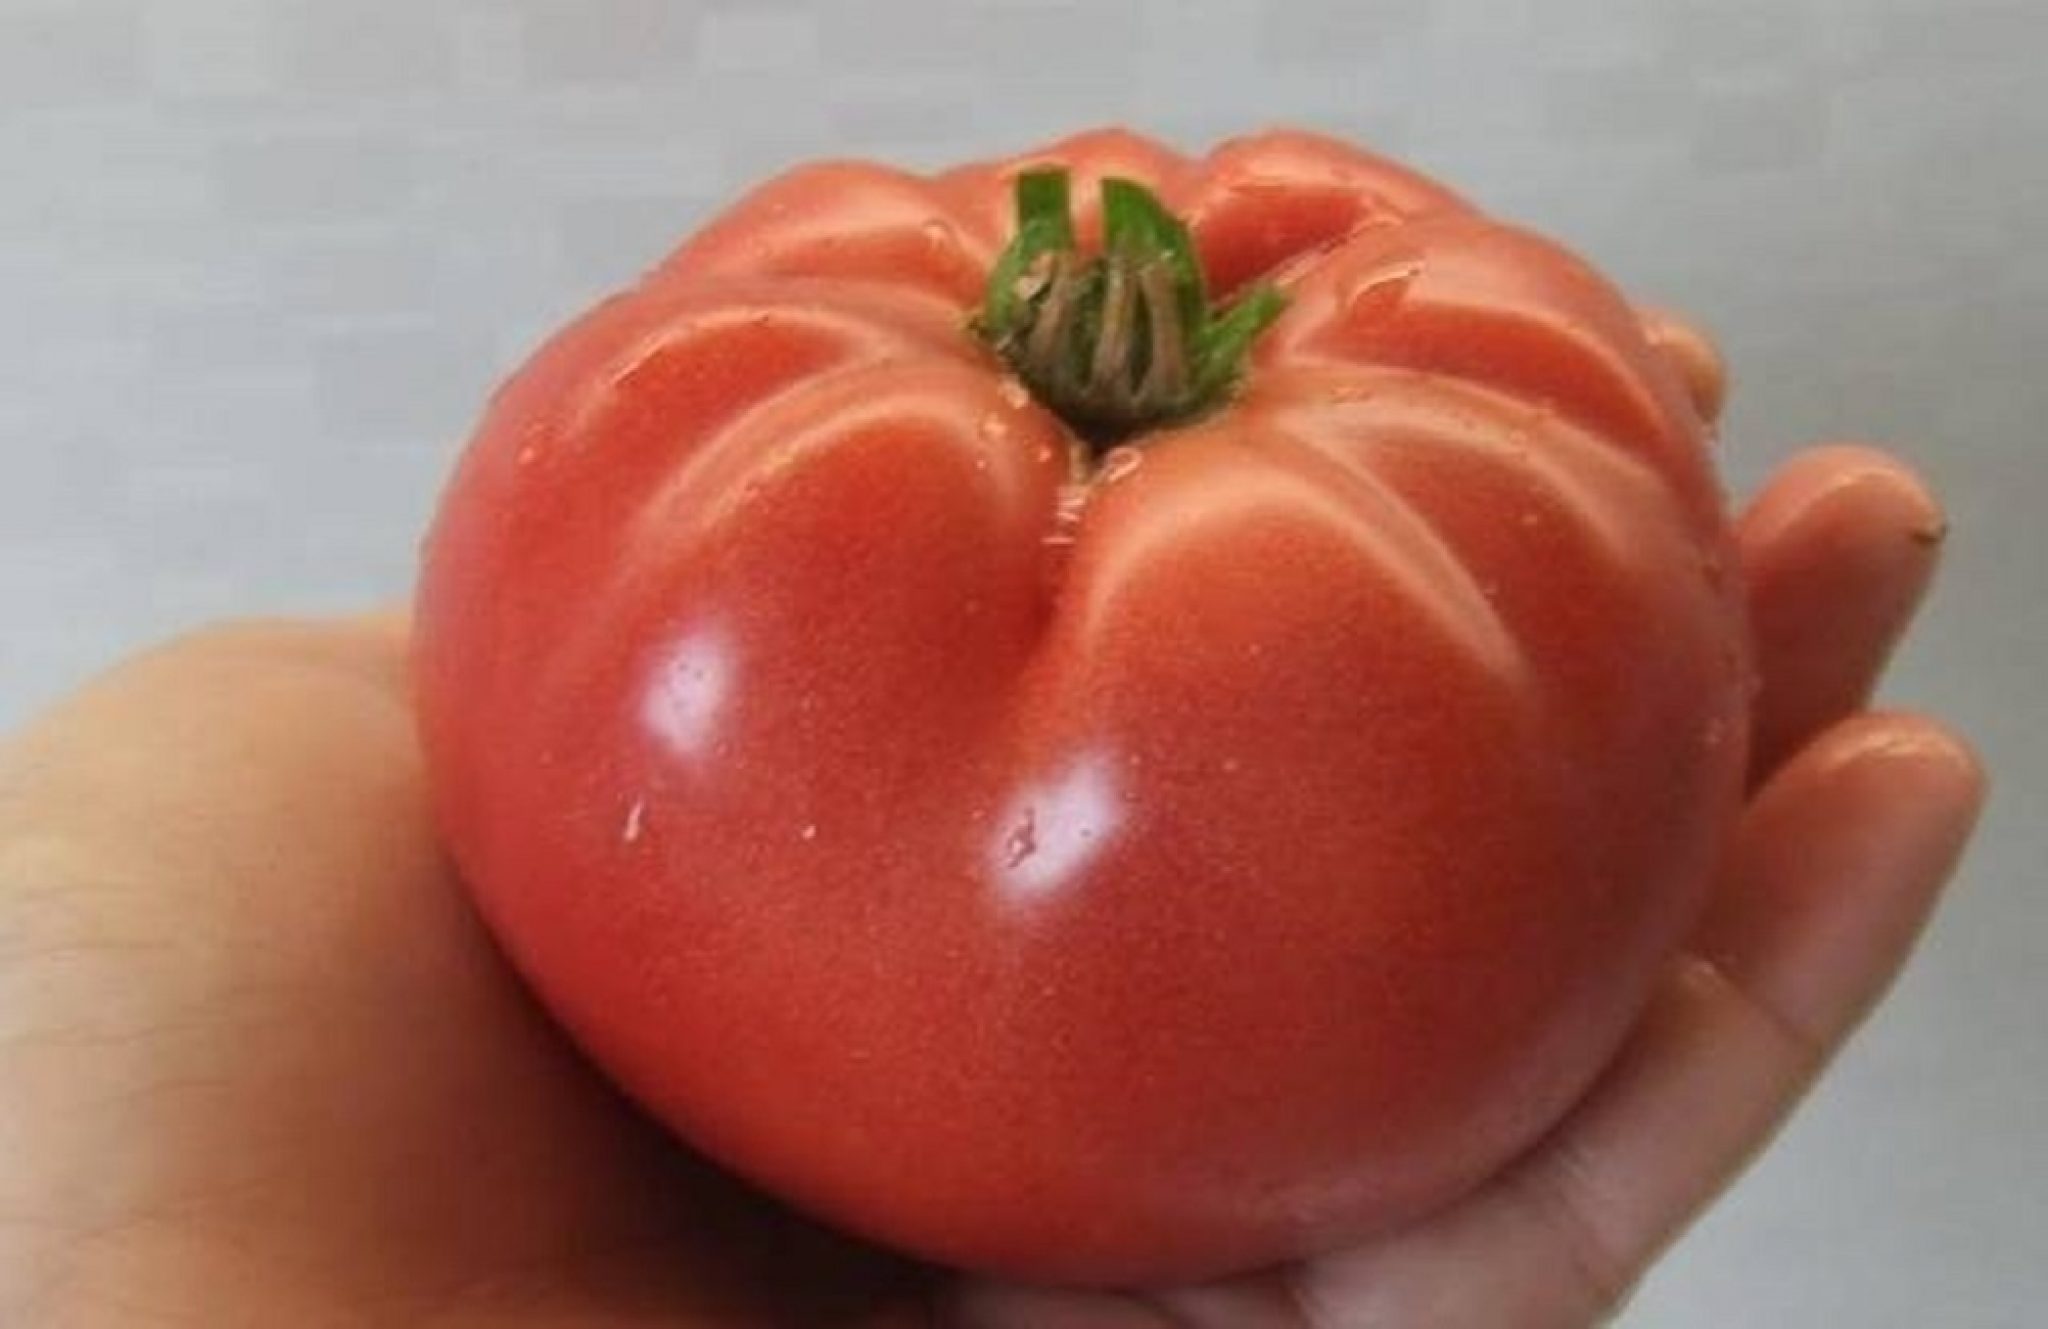 Минусинские сорта томатов